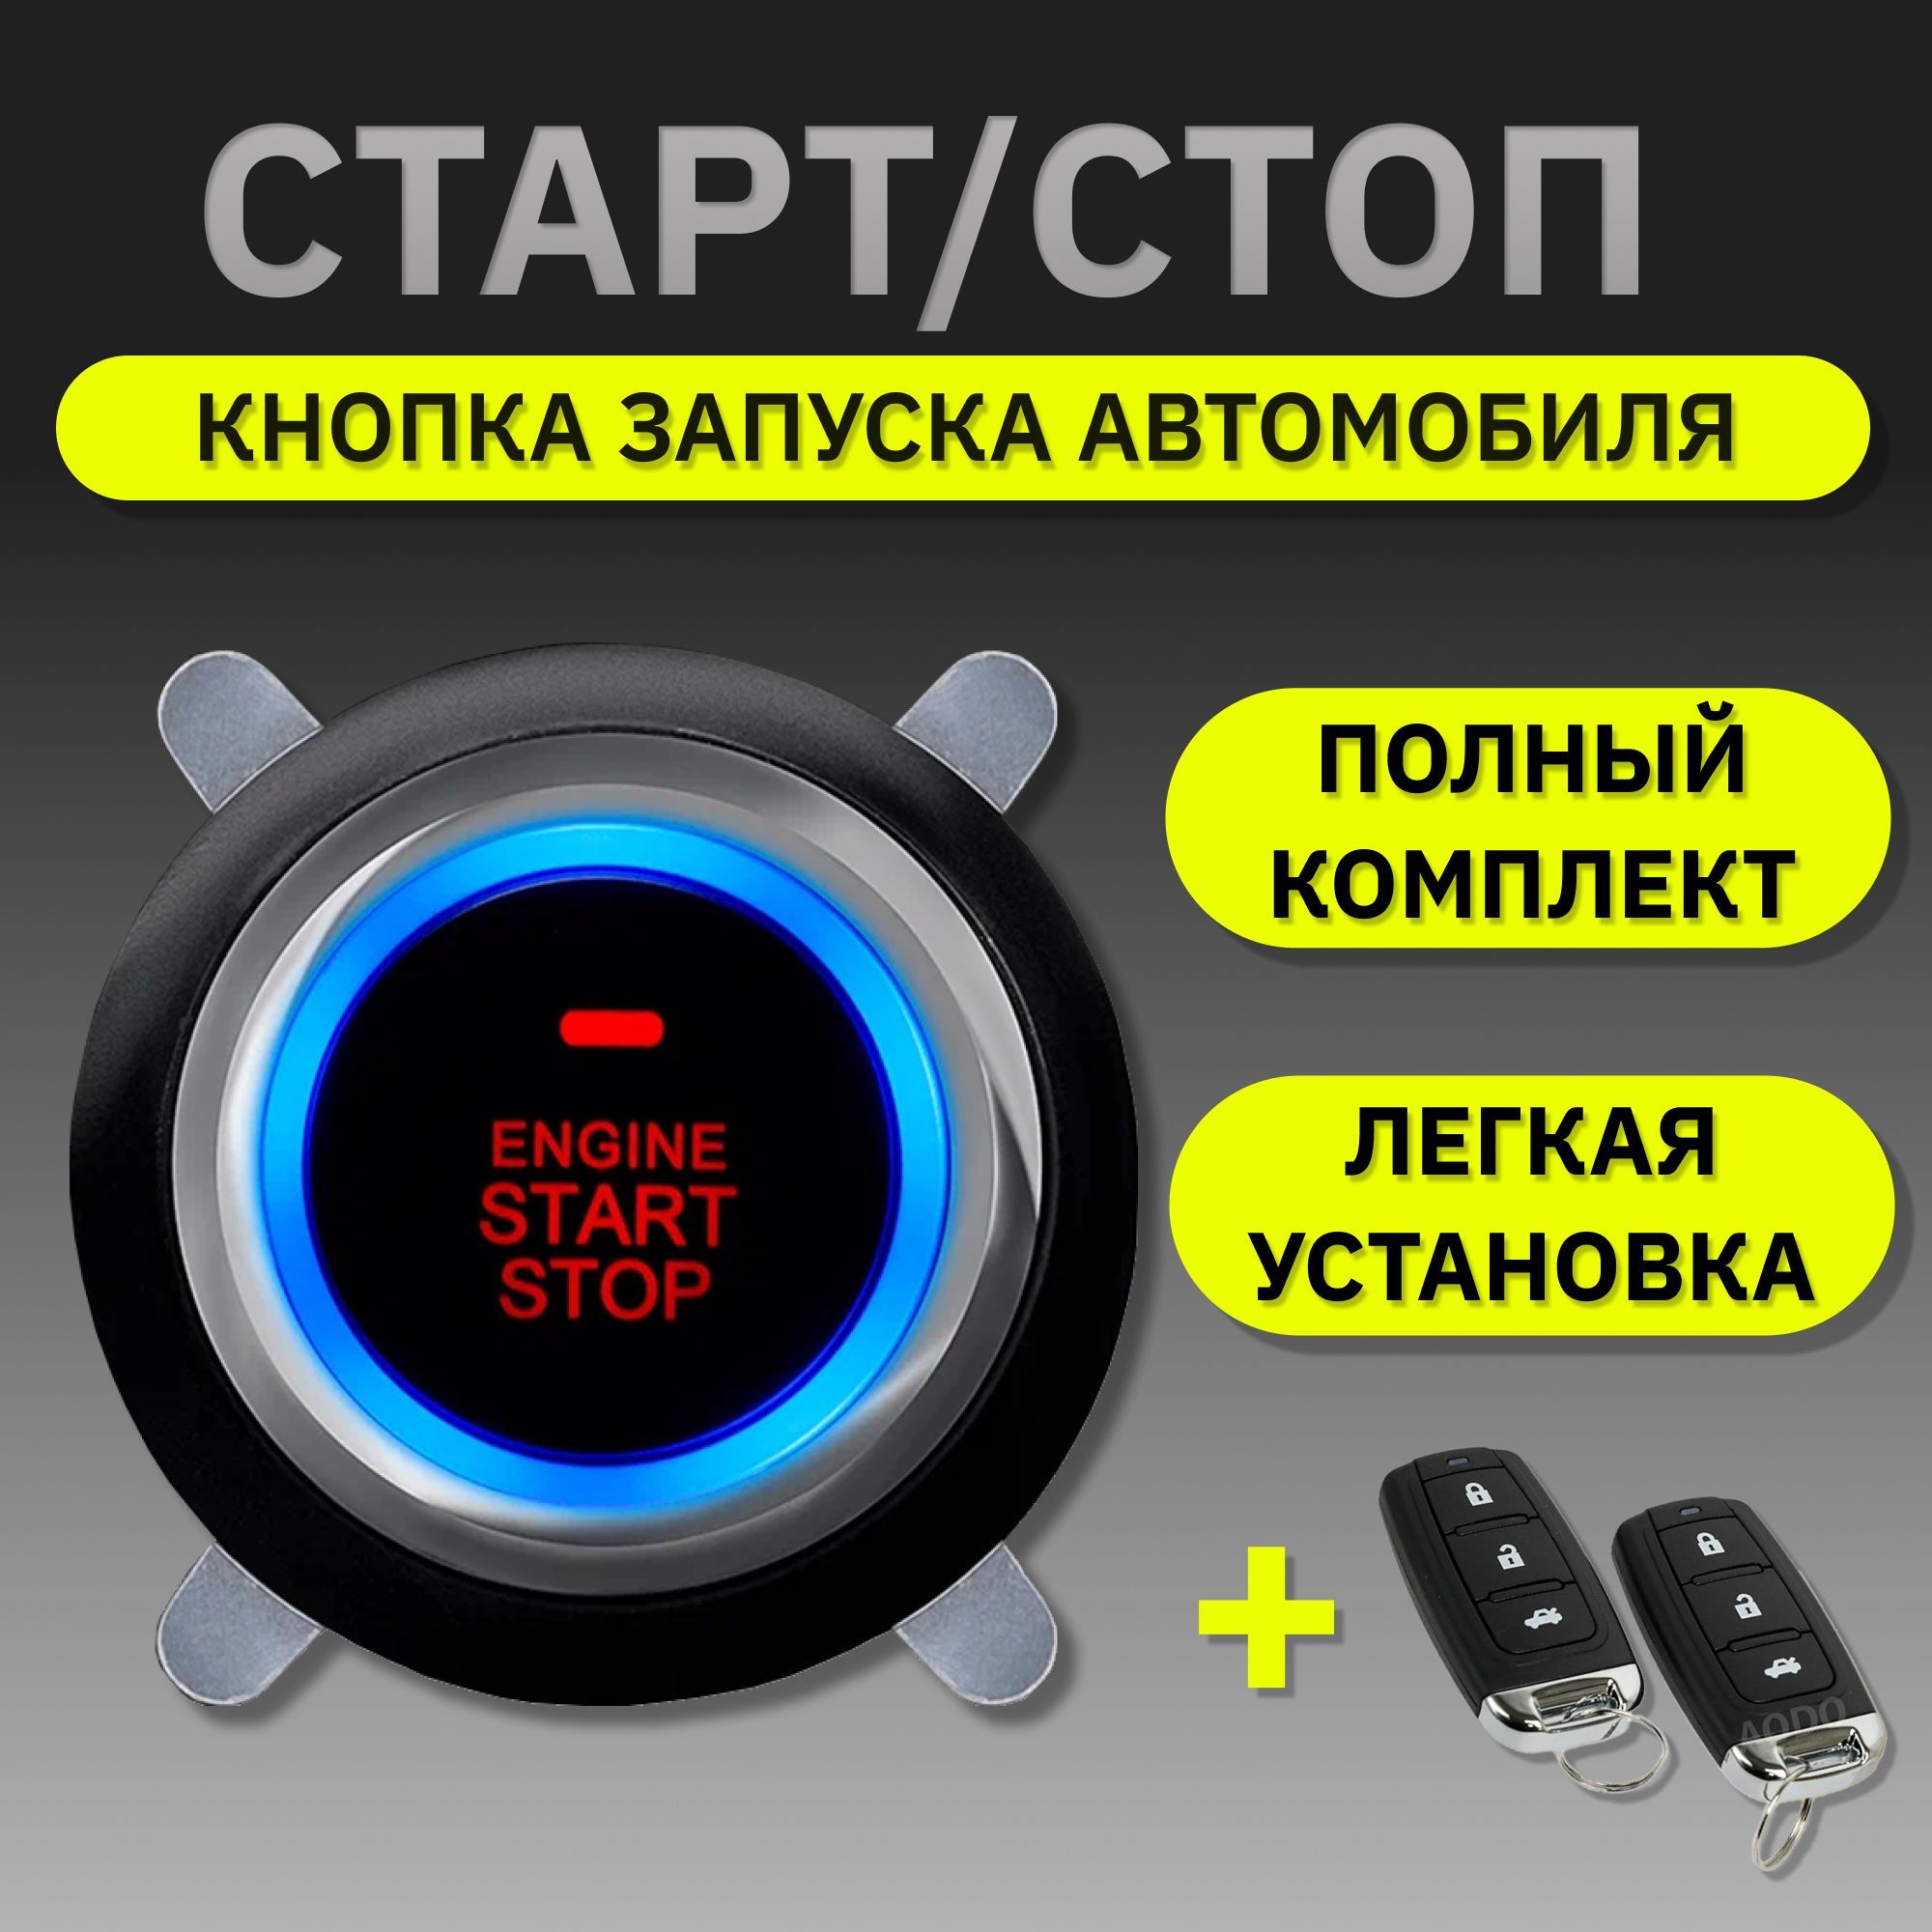 Установка кнопки Старт-Стоп в Екатеринбурге